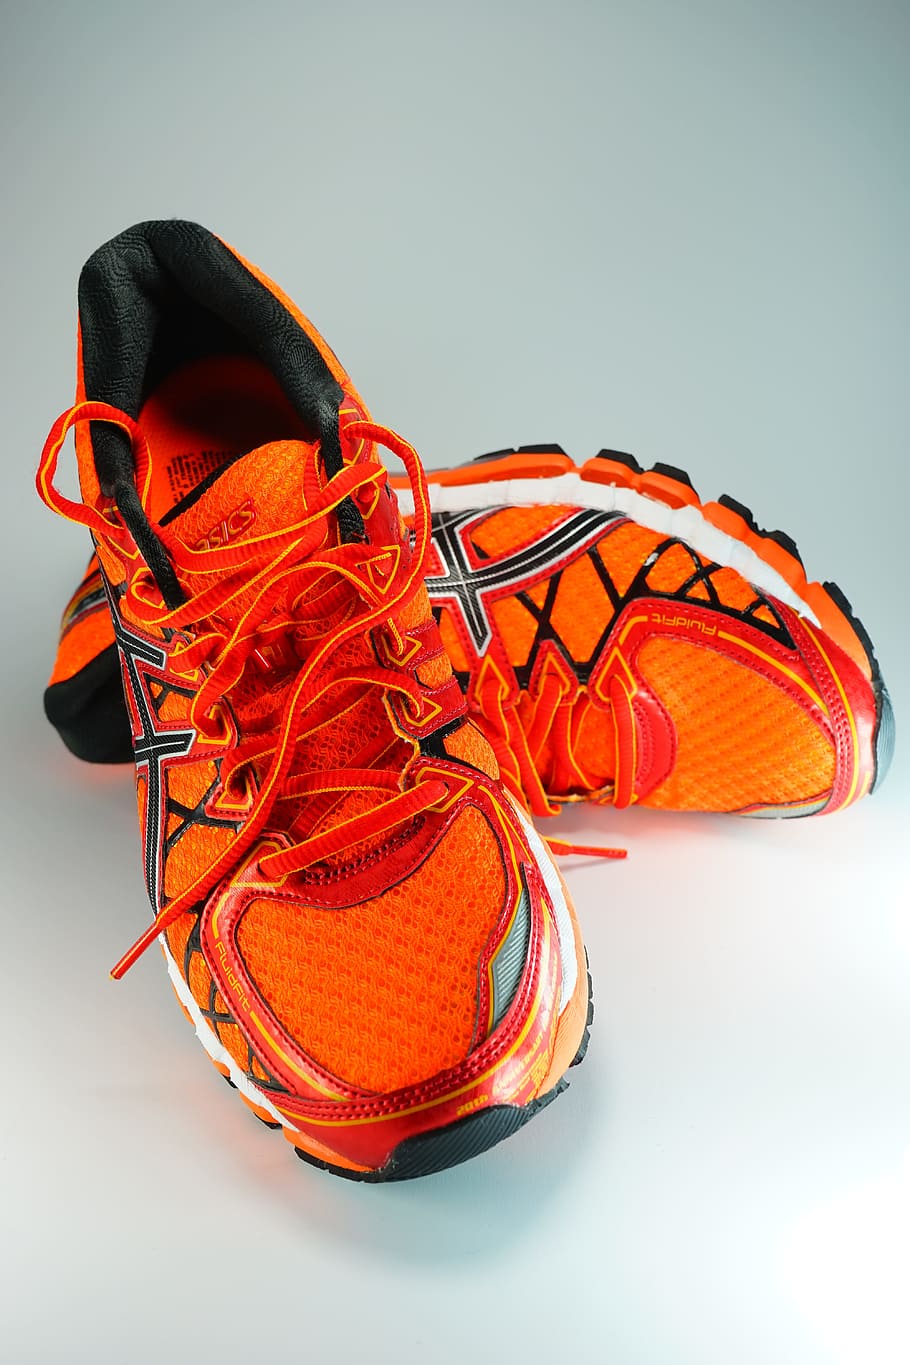 pasangan, oranye dan putih, asics, lari, sepatu, sepatu kets, sepatu lari, sepatu olahraga, joging, olahraga